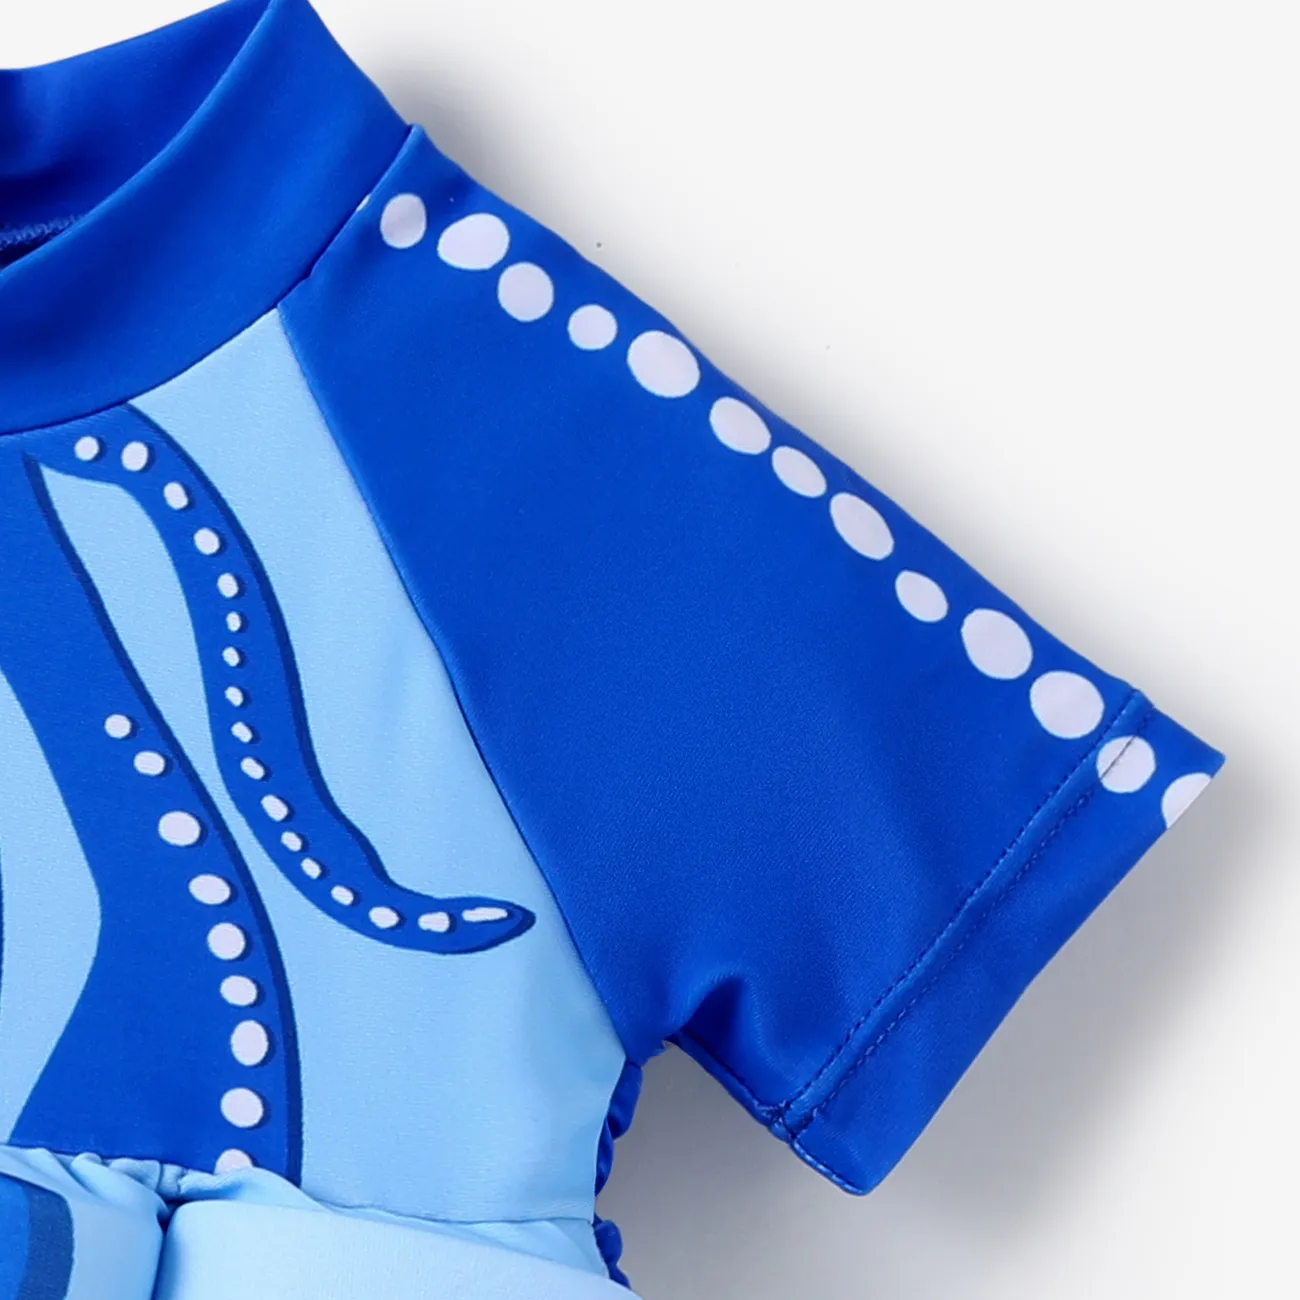 Bébé Garçon Couture de tissus Animaux marins Enfantin Manches courtes Maillots de bain Bleu big image 1